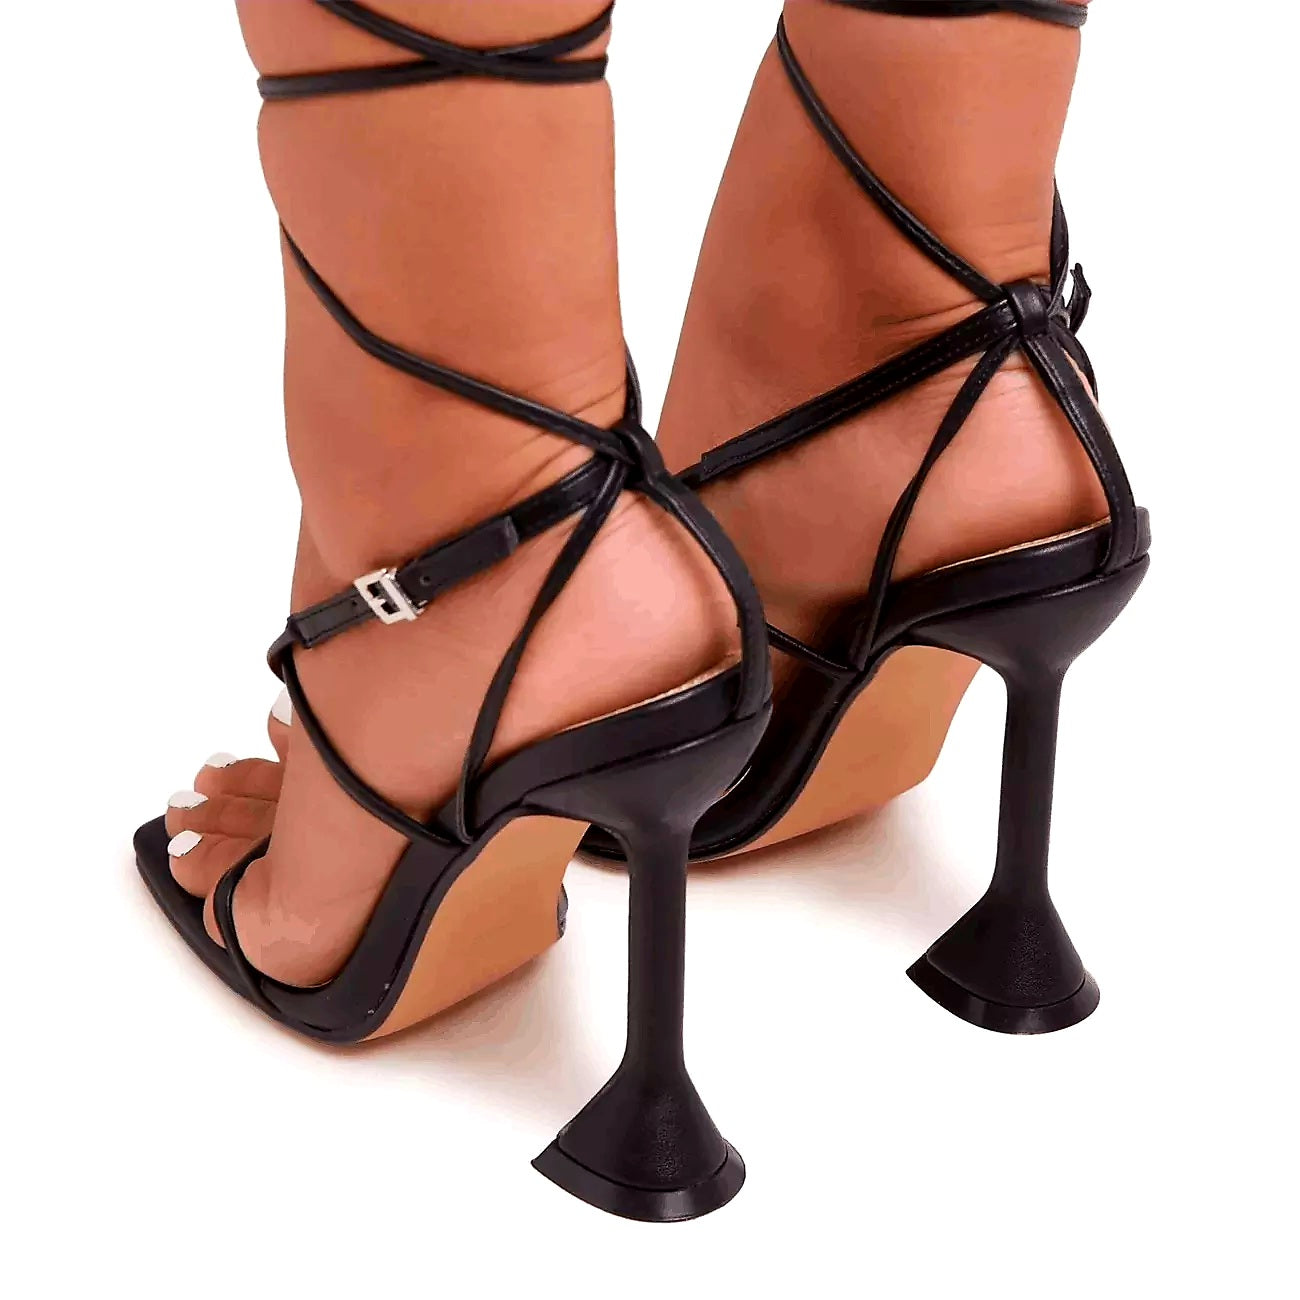 Cross tied heels